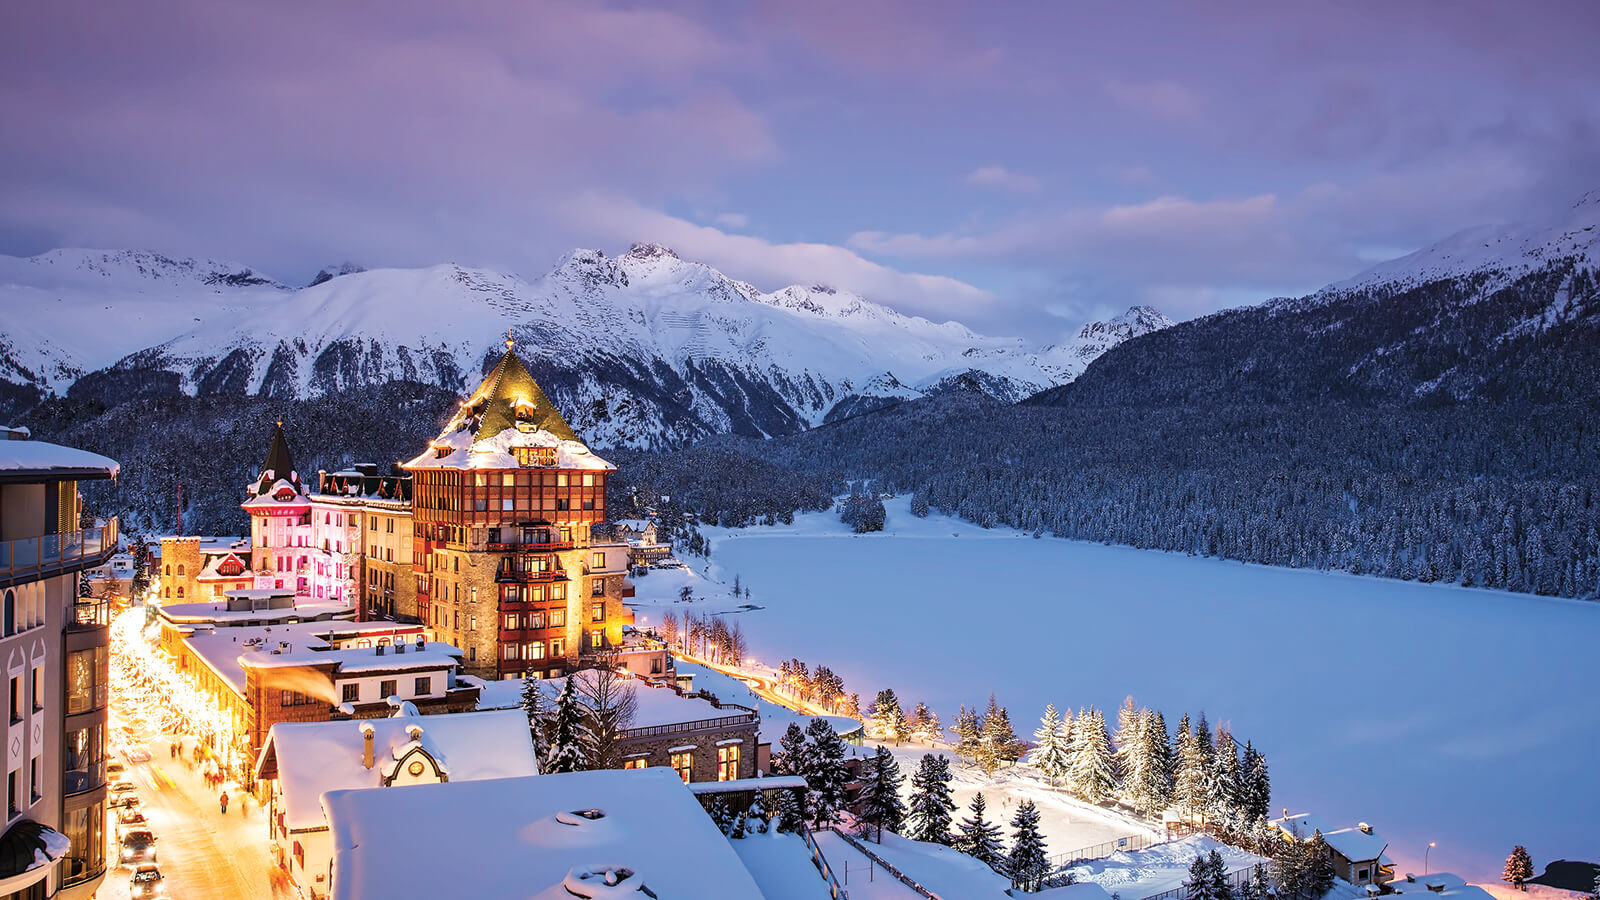 Honeymoon places in Switzerland: St. Moritz